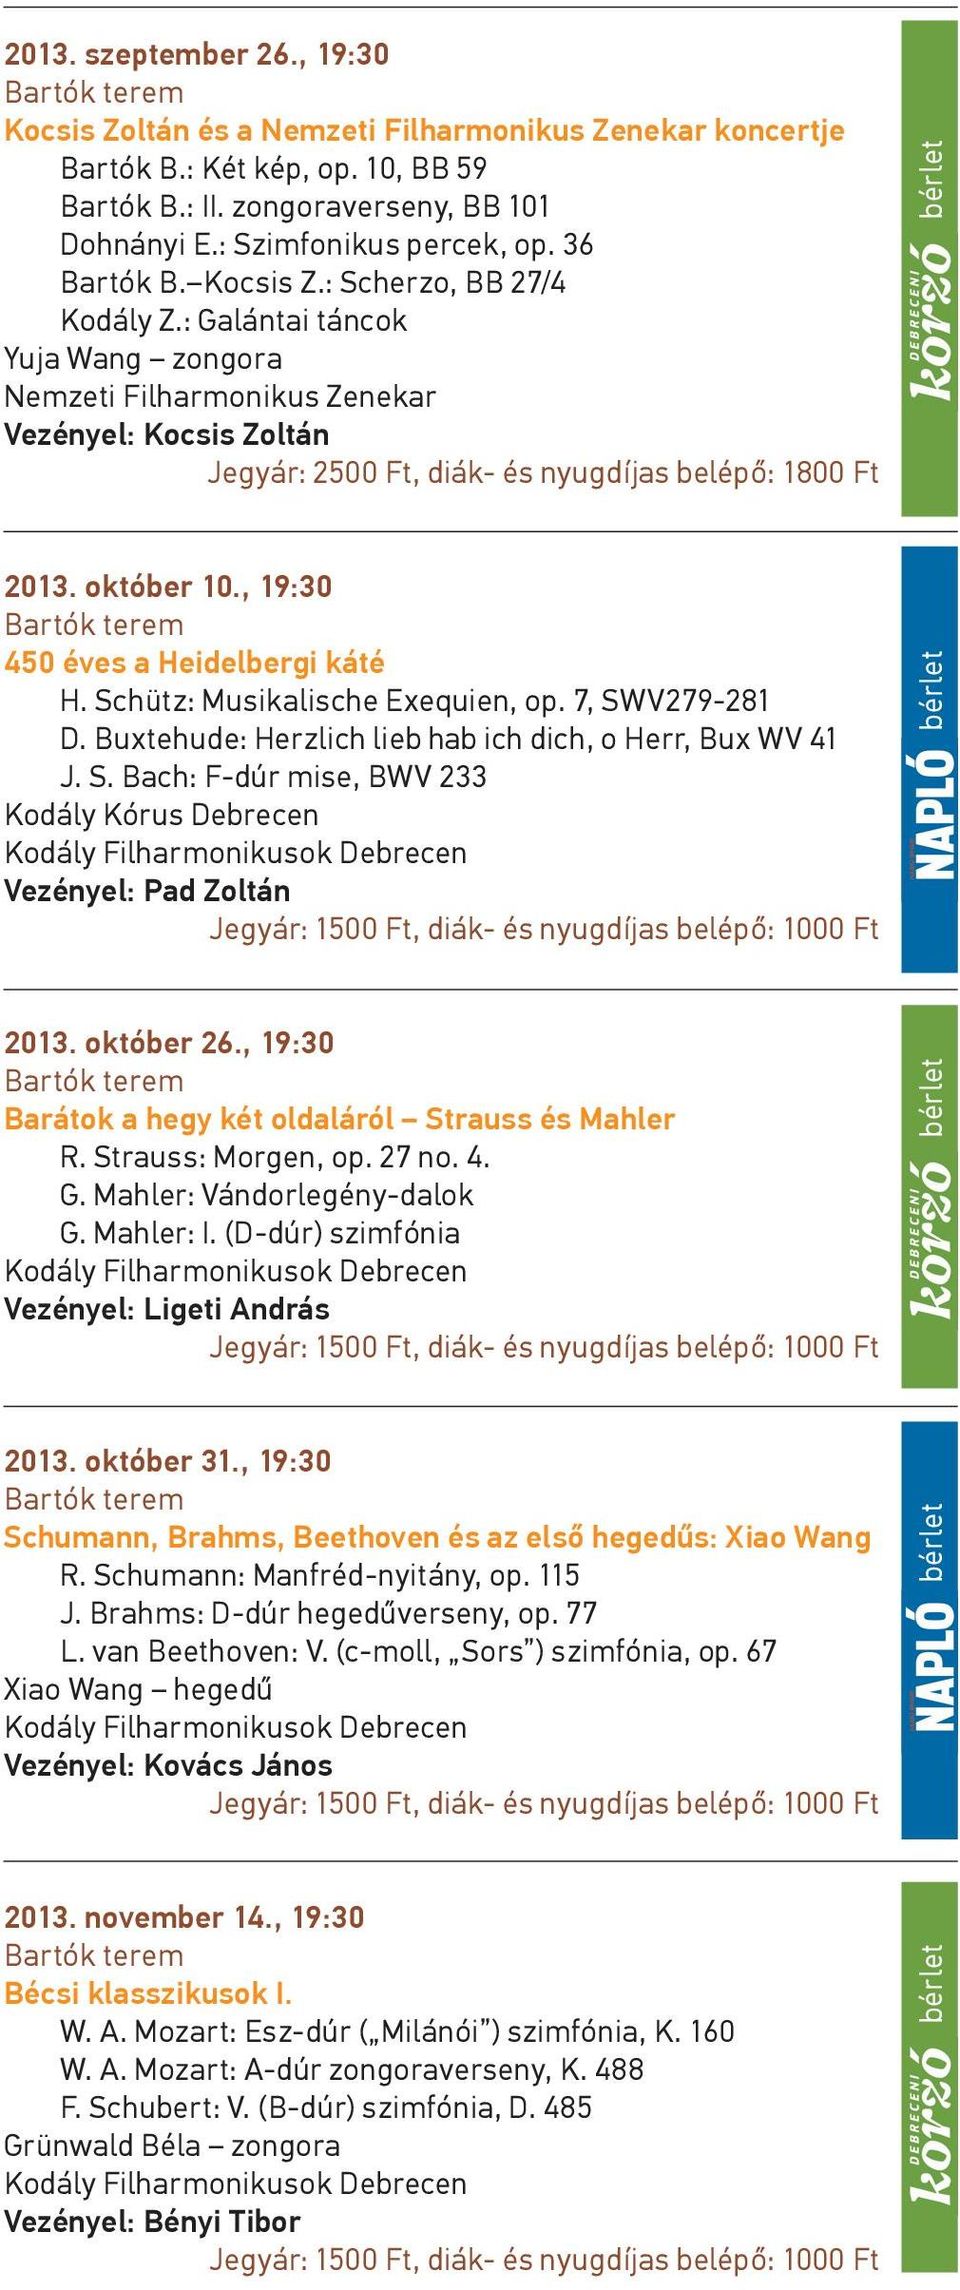 október 10., 19:30 450 éves a Heidelbergi káté H. Schütz: Musikalische Exequien, op. 7, SWV279-281 D. Buxtehude: Herzlich lieb hab ich dich, o Herr, Bux WV 41 J. S. Bach: F-dúr mise, BWV 233 2013.